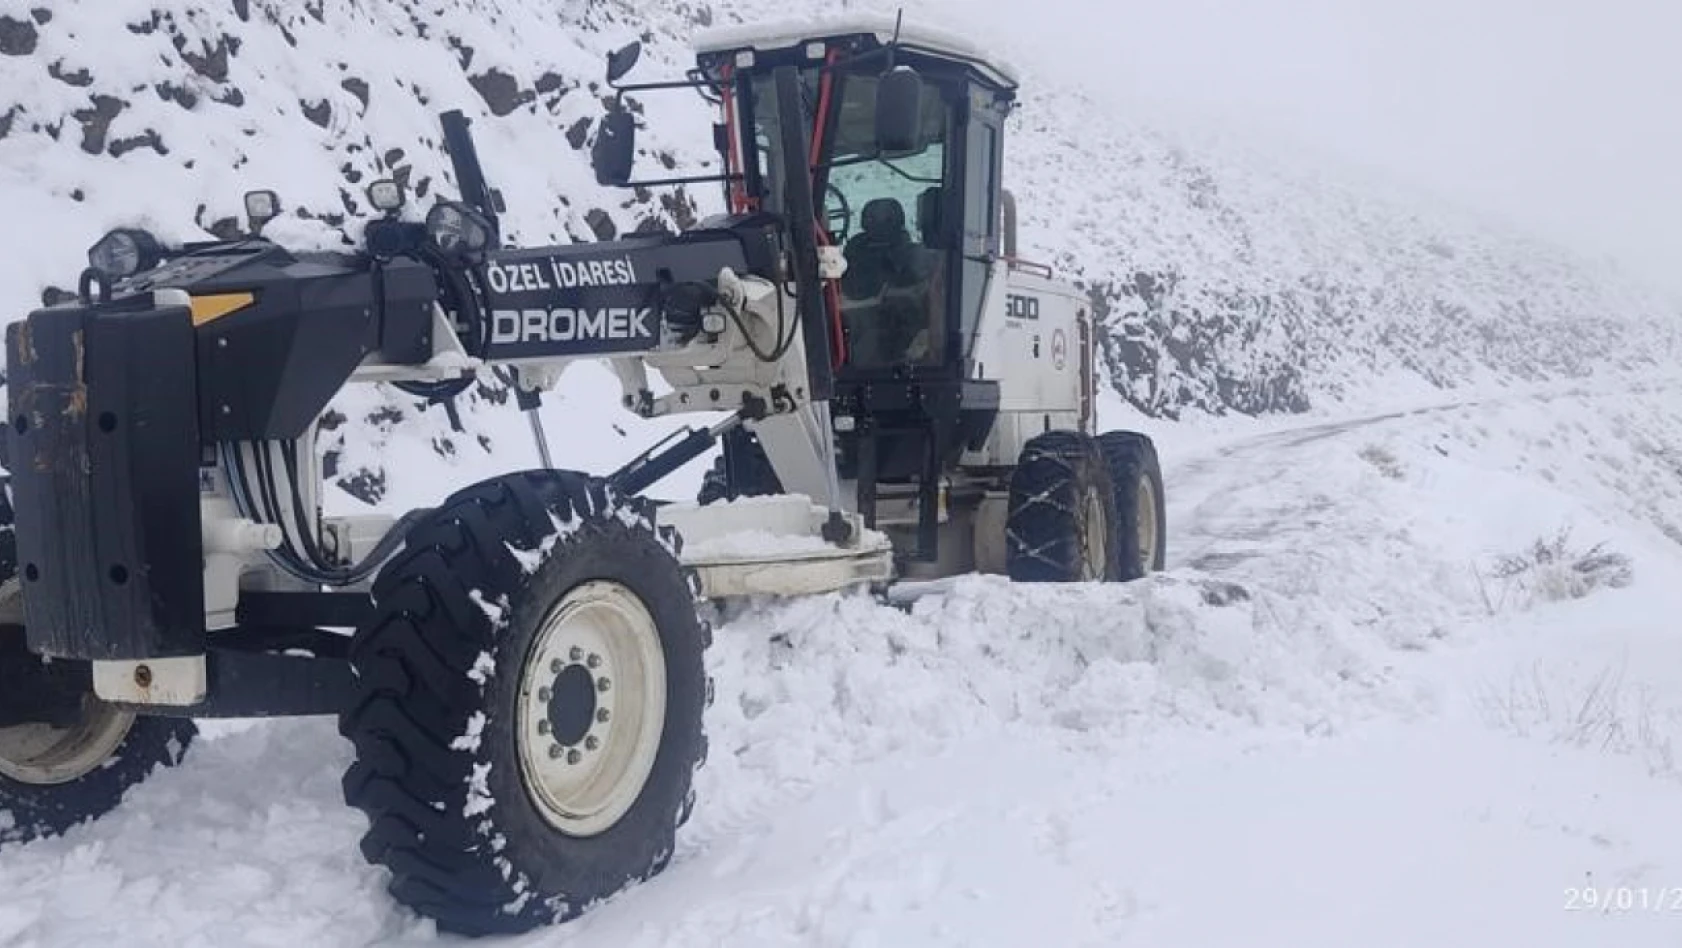 Elazığ Özel İdare ekipleri karla mücadeleye hazır: 116 personel karla mücadele için hazır bekliyor